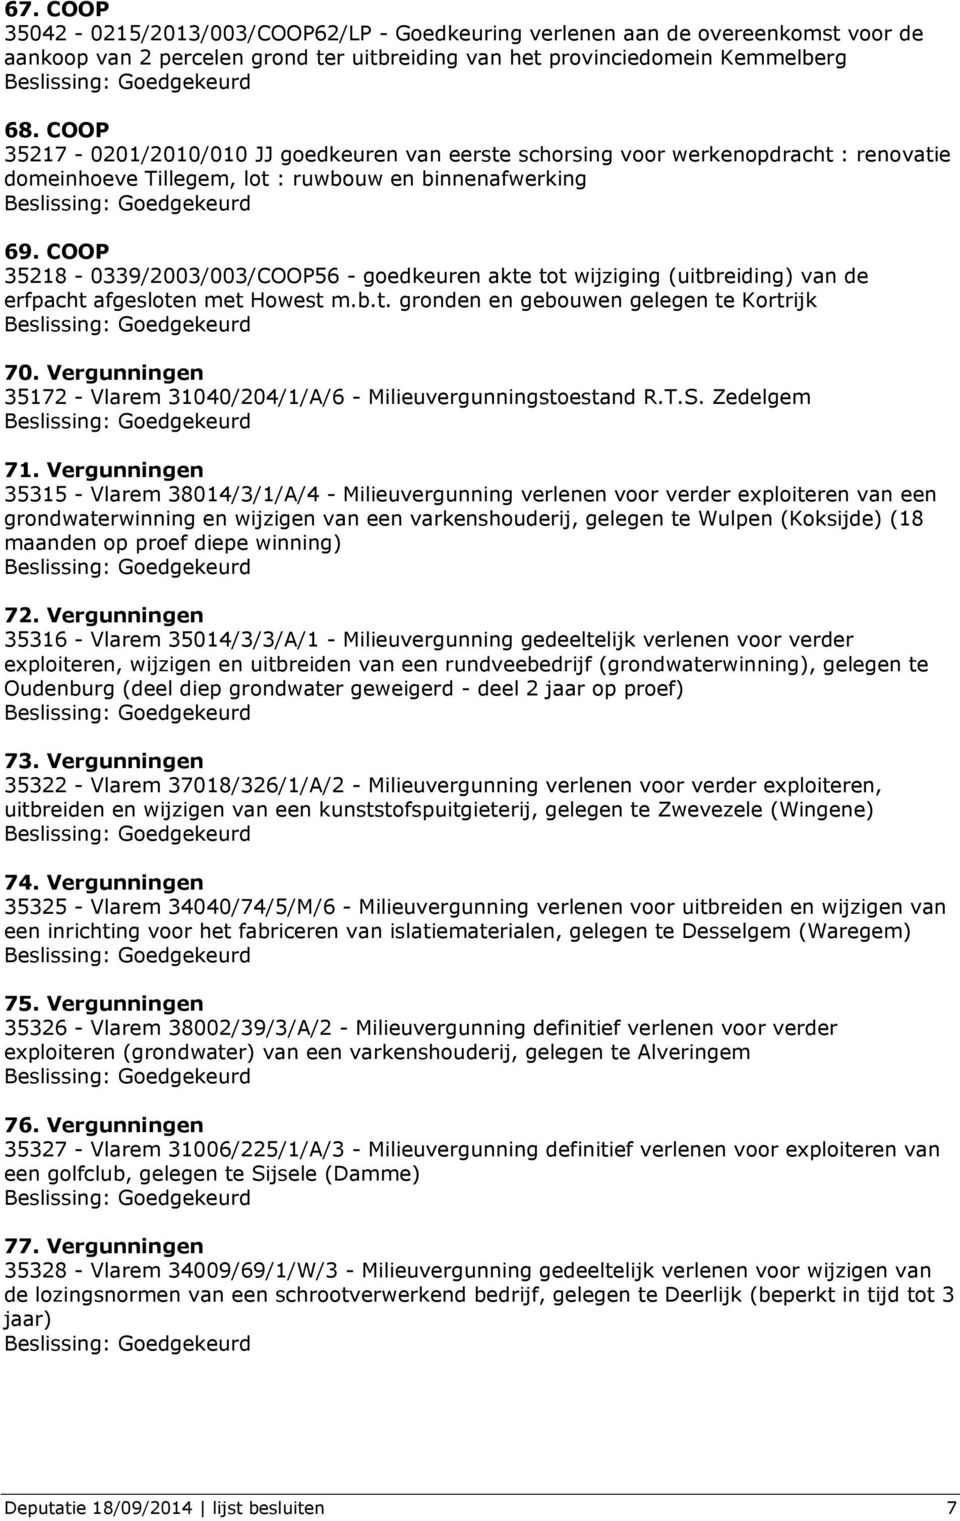 COOP 35218-0339/2003/003/COOP56 - goedkeuren akte tot wijziging (uitbreiding) van de erfpacht afgesloten met Howest m.b.t. gronden en gebouwen gelegen te Kortrijk 70.